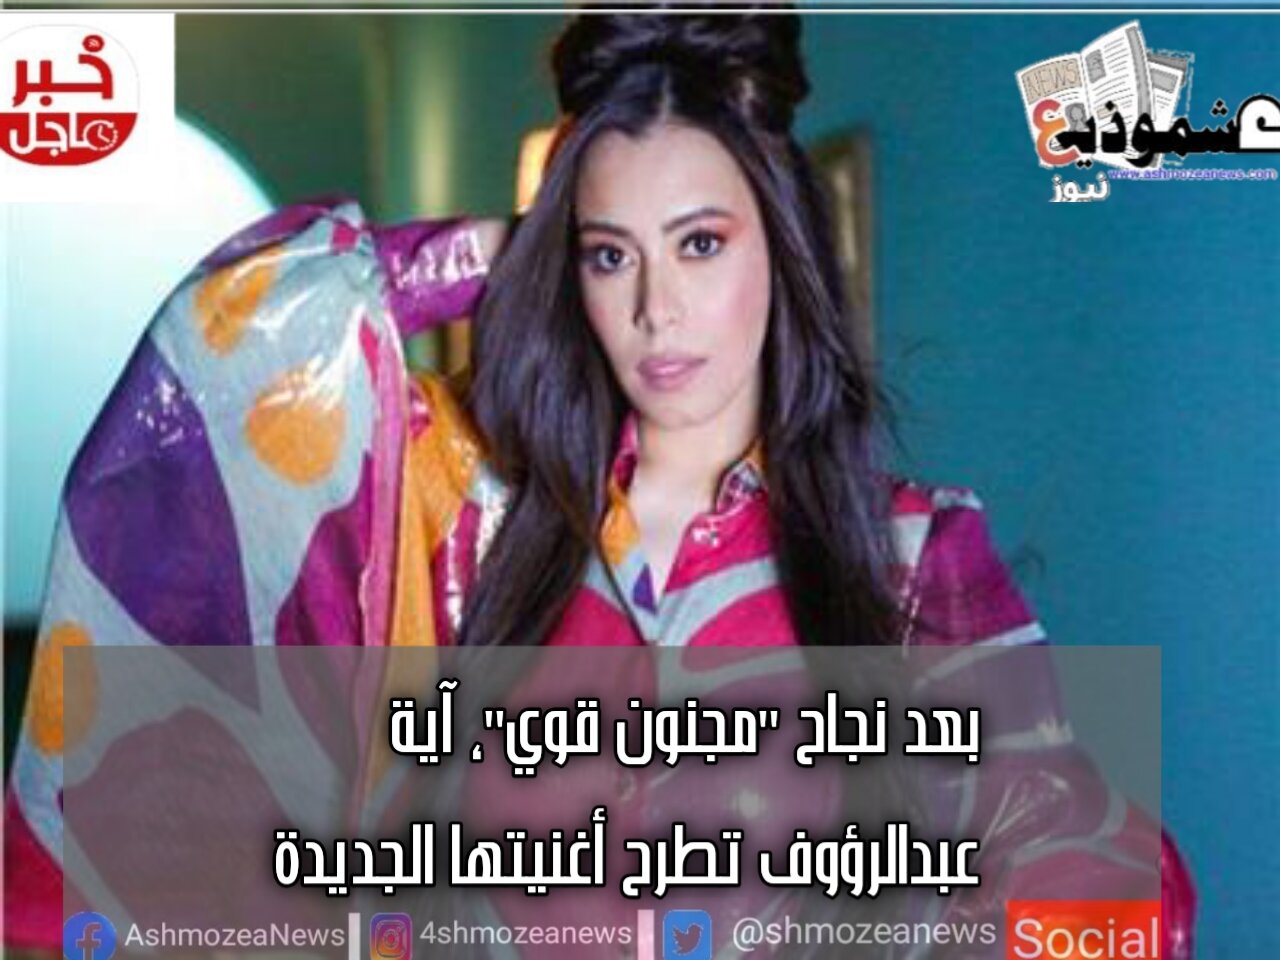 بعد نجاح "مجنون قوي"، آية عبدالرؤوف تطرح أغنيتها الجديدة